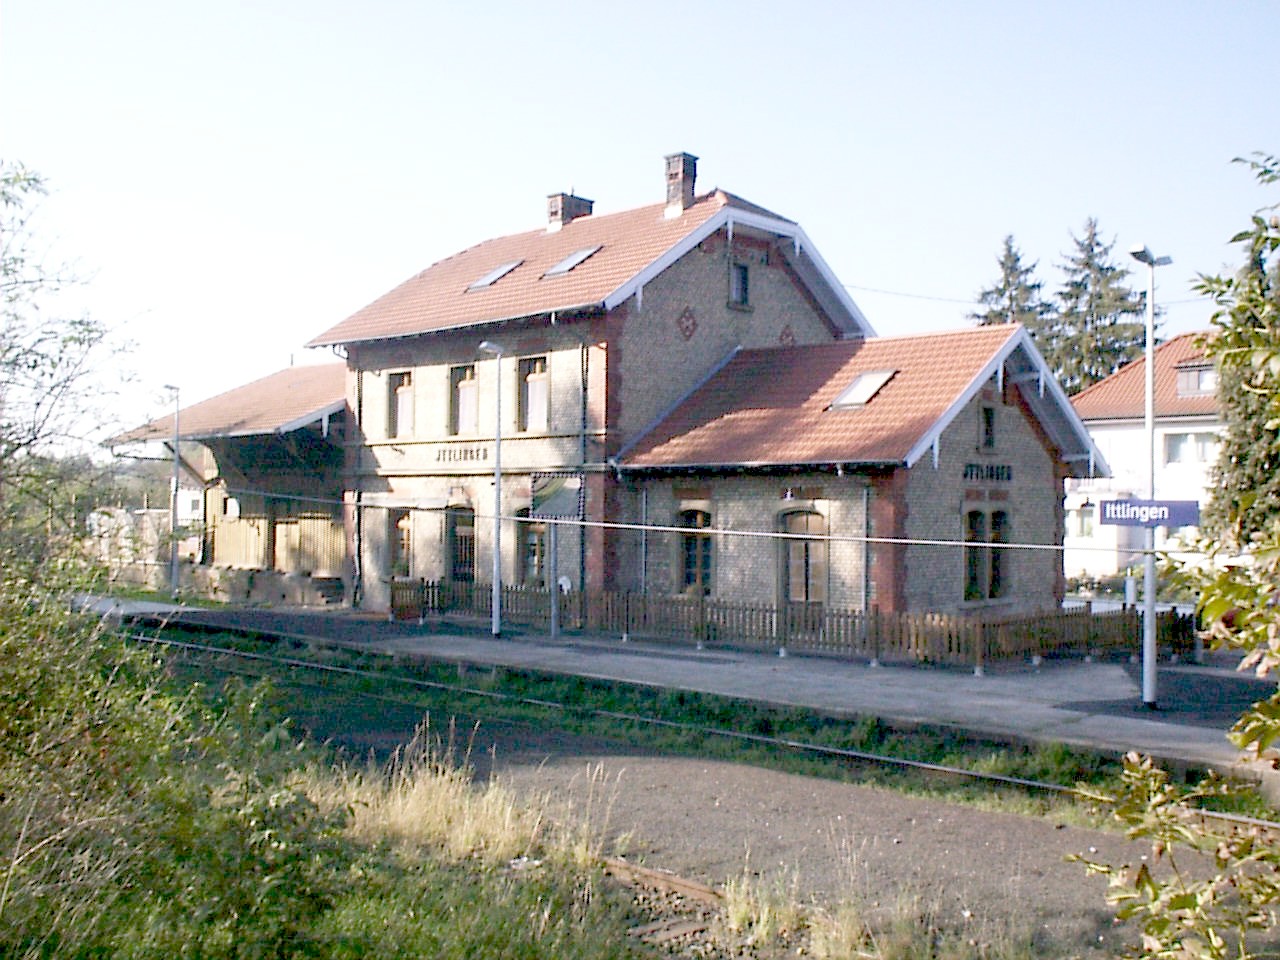 Bahnhof Ittingen